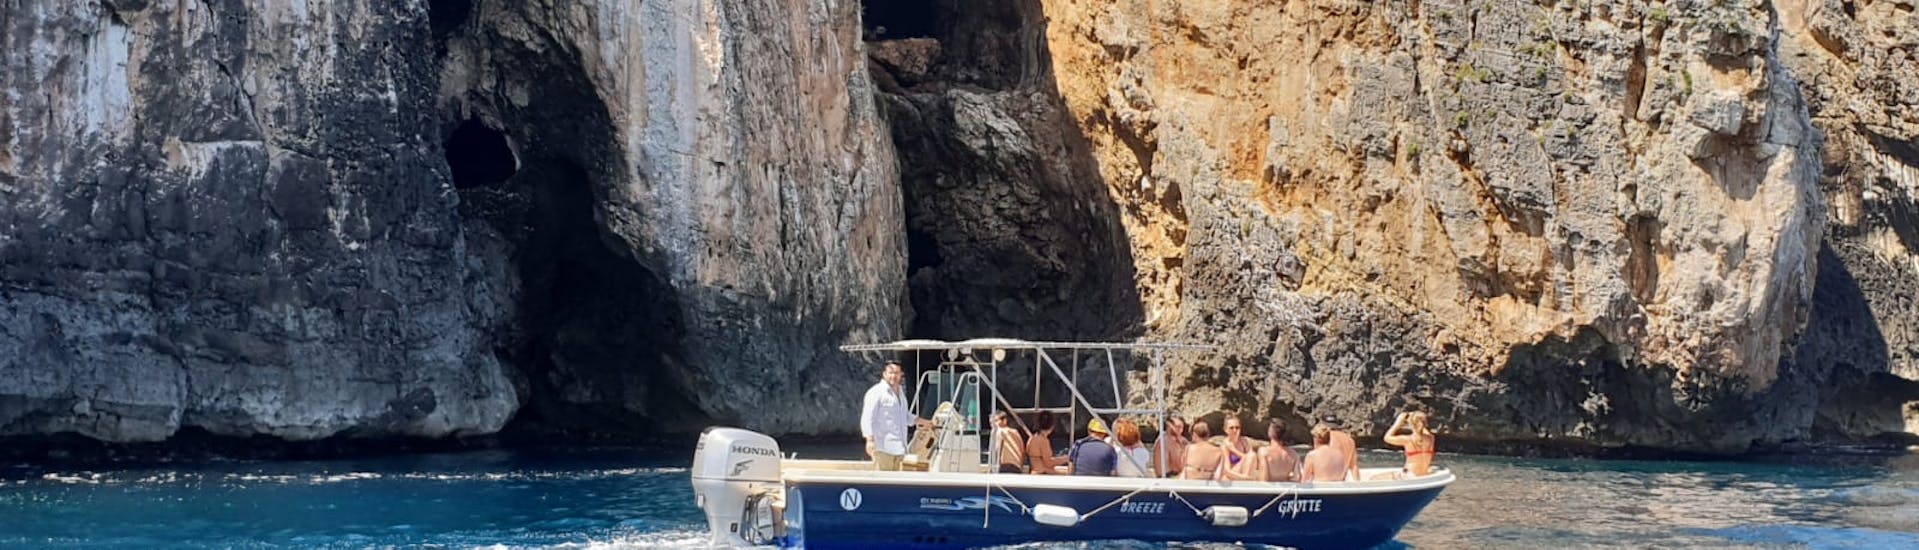 Zicht op een boot die langs de kust van Santa Maria di Leuca vaart tijdens de boottocht naar de Adriatische grotten vanuit Santa Maria di Leuca met Leuca Due Mari.